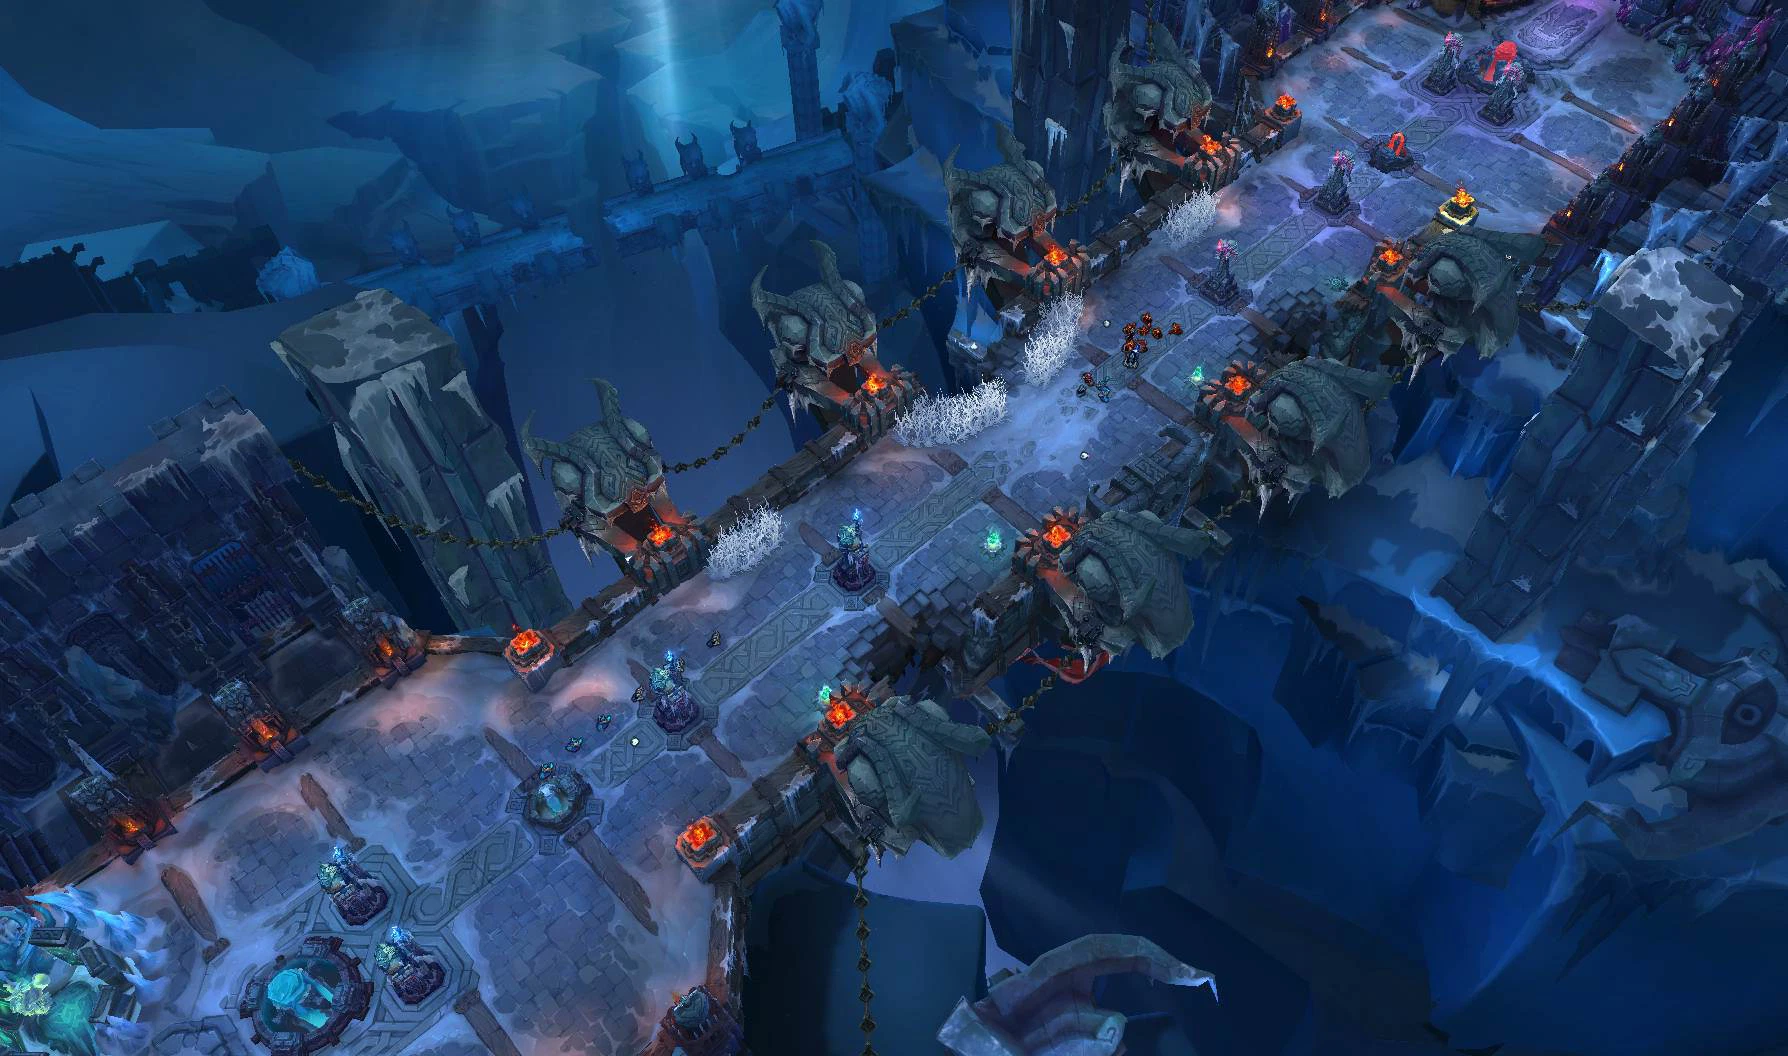 与对手合作打造一场近4小时的极地大乱斗，玩家让社区充满争议——图2。